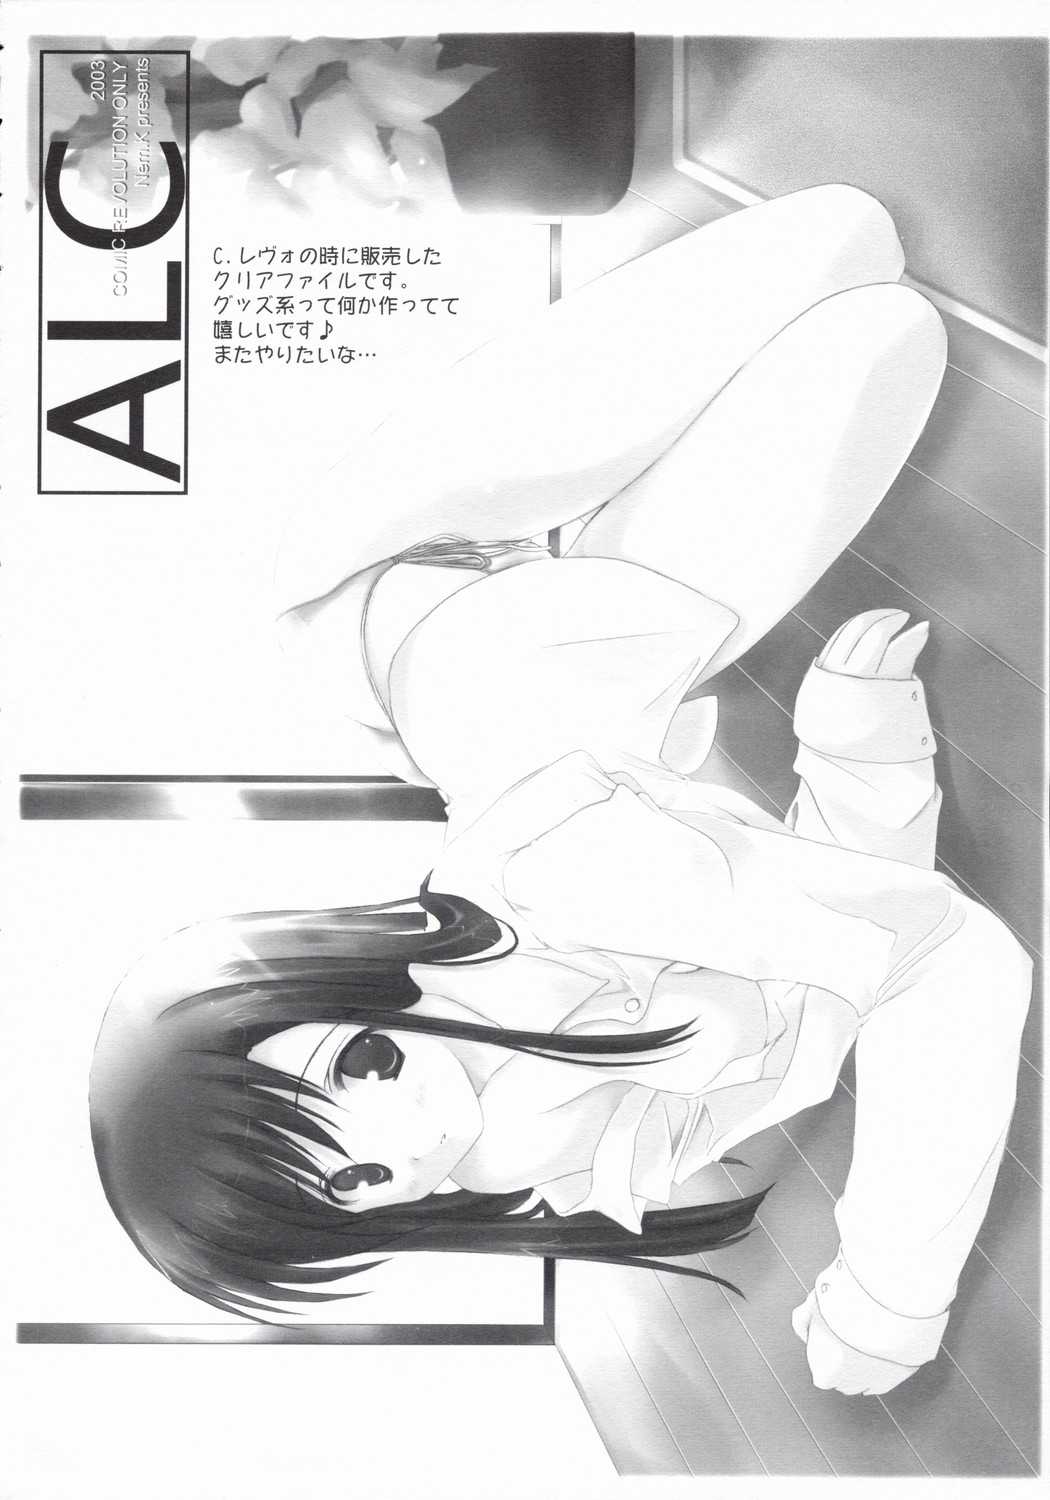 (C65) [A.L.C. (Kannazuki Nemu)] Angel Love Collection 2003 ver (Ragnarok Online) [A.L.C (神無月ねむ)] Angel Love Collection 2003 ver (ラグナロクオンライン)